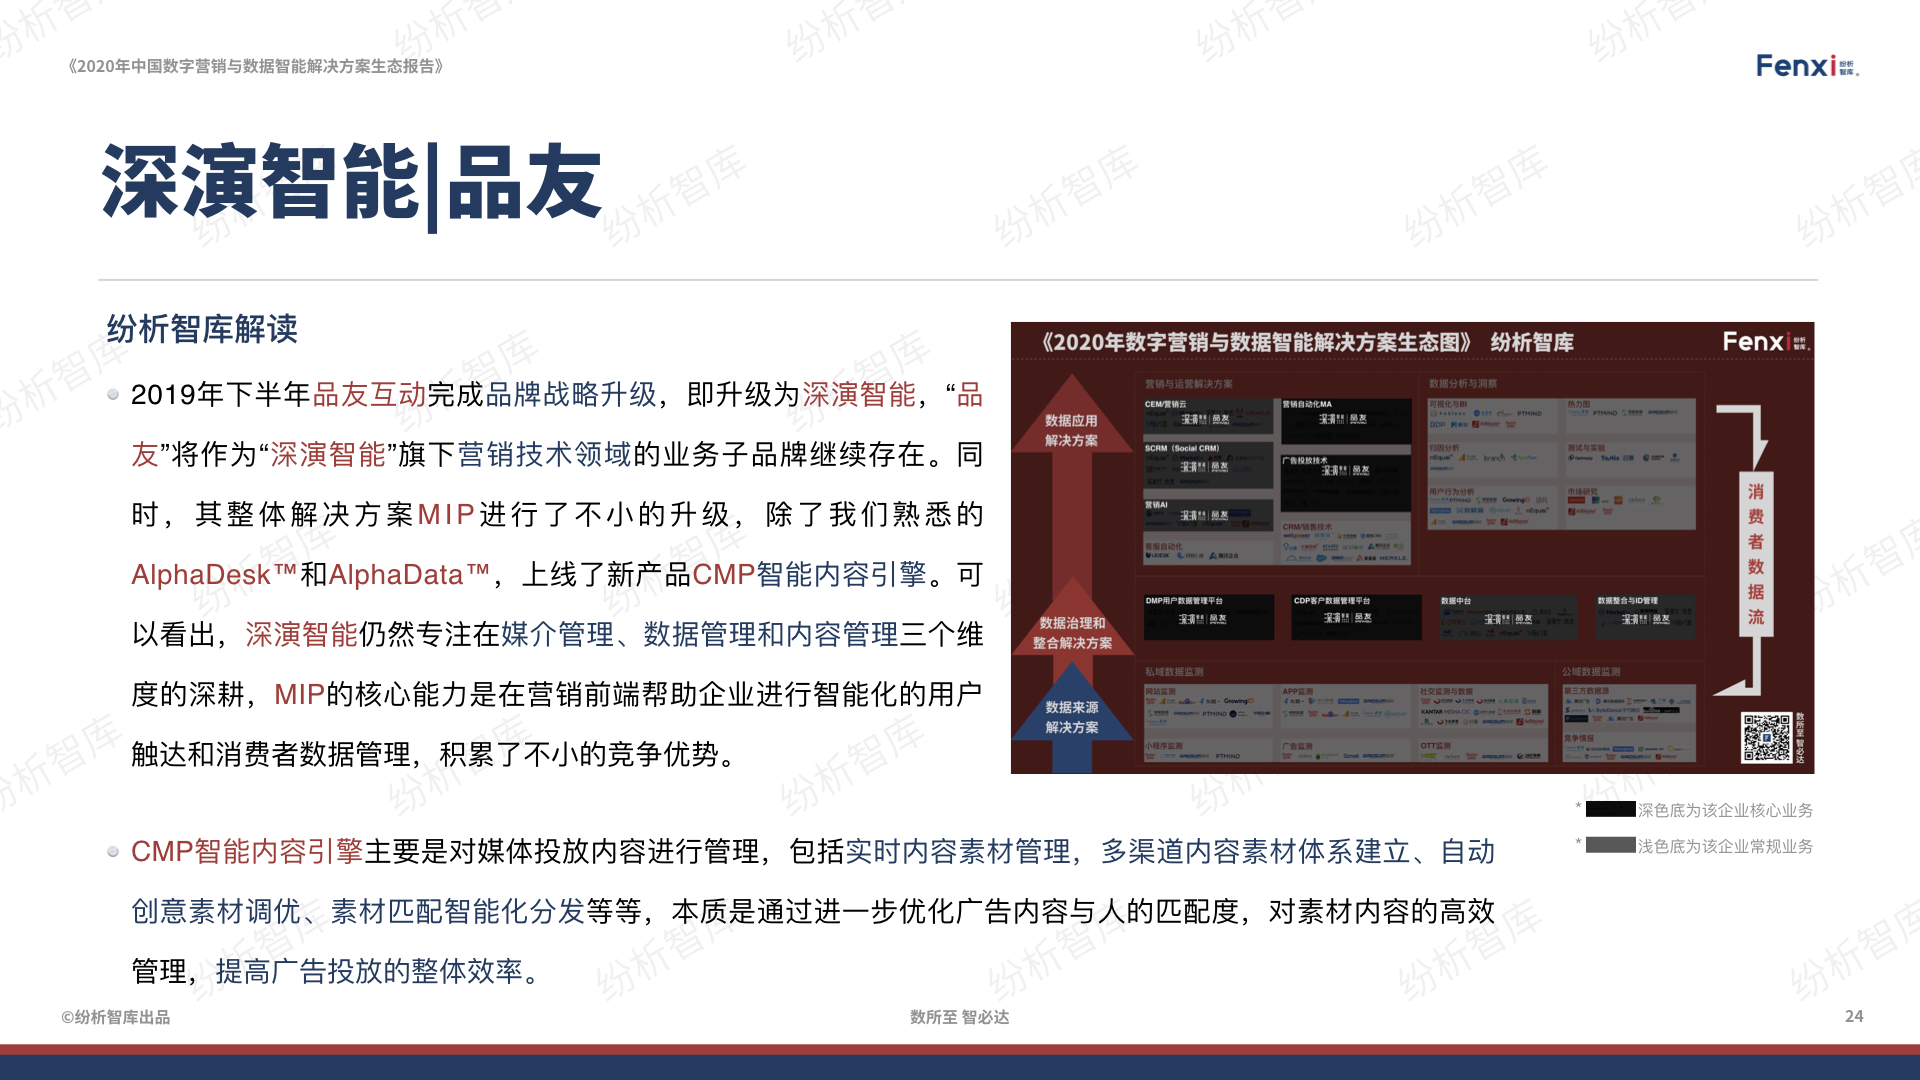 【V8】《2020年中国数字营销与数据智能解决方案生态图报告》0106.024.jpeg